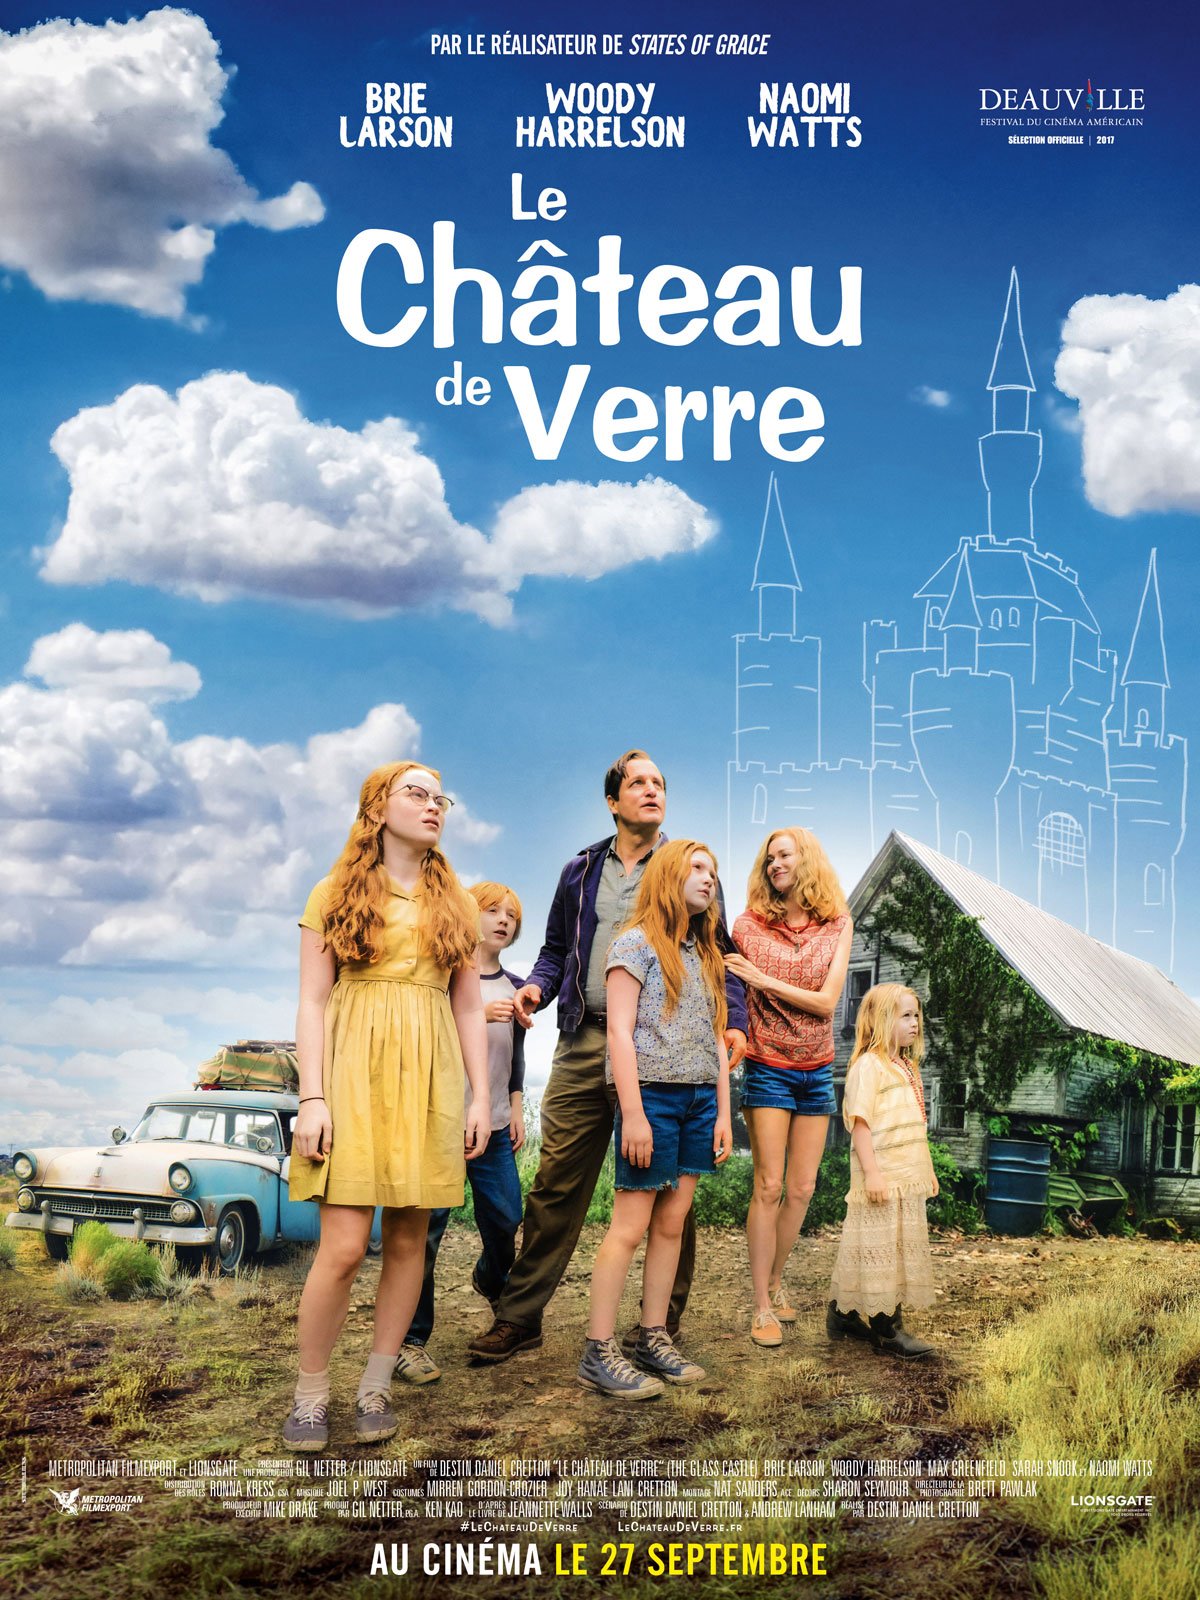 Le Château de verre - film 2017 - AlloCiné